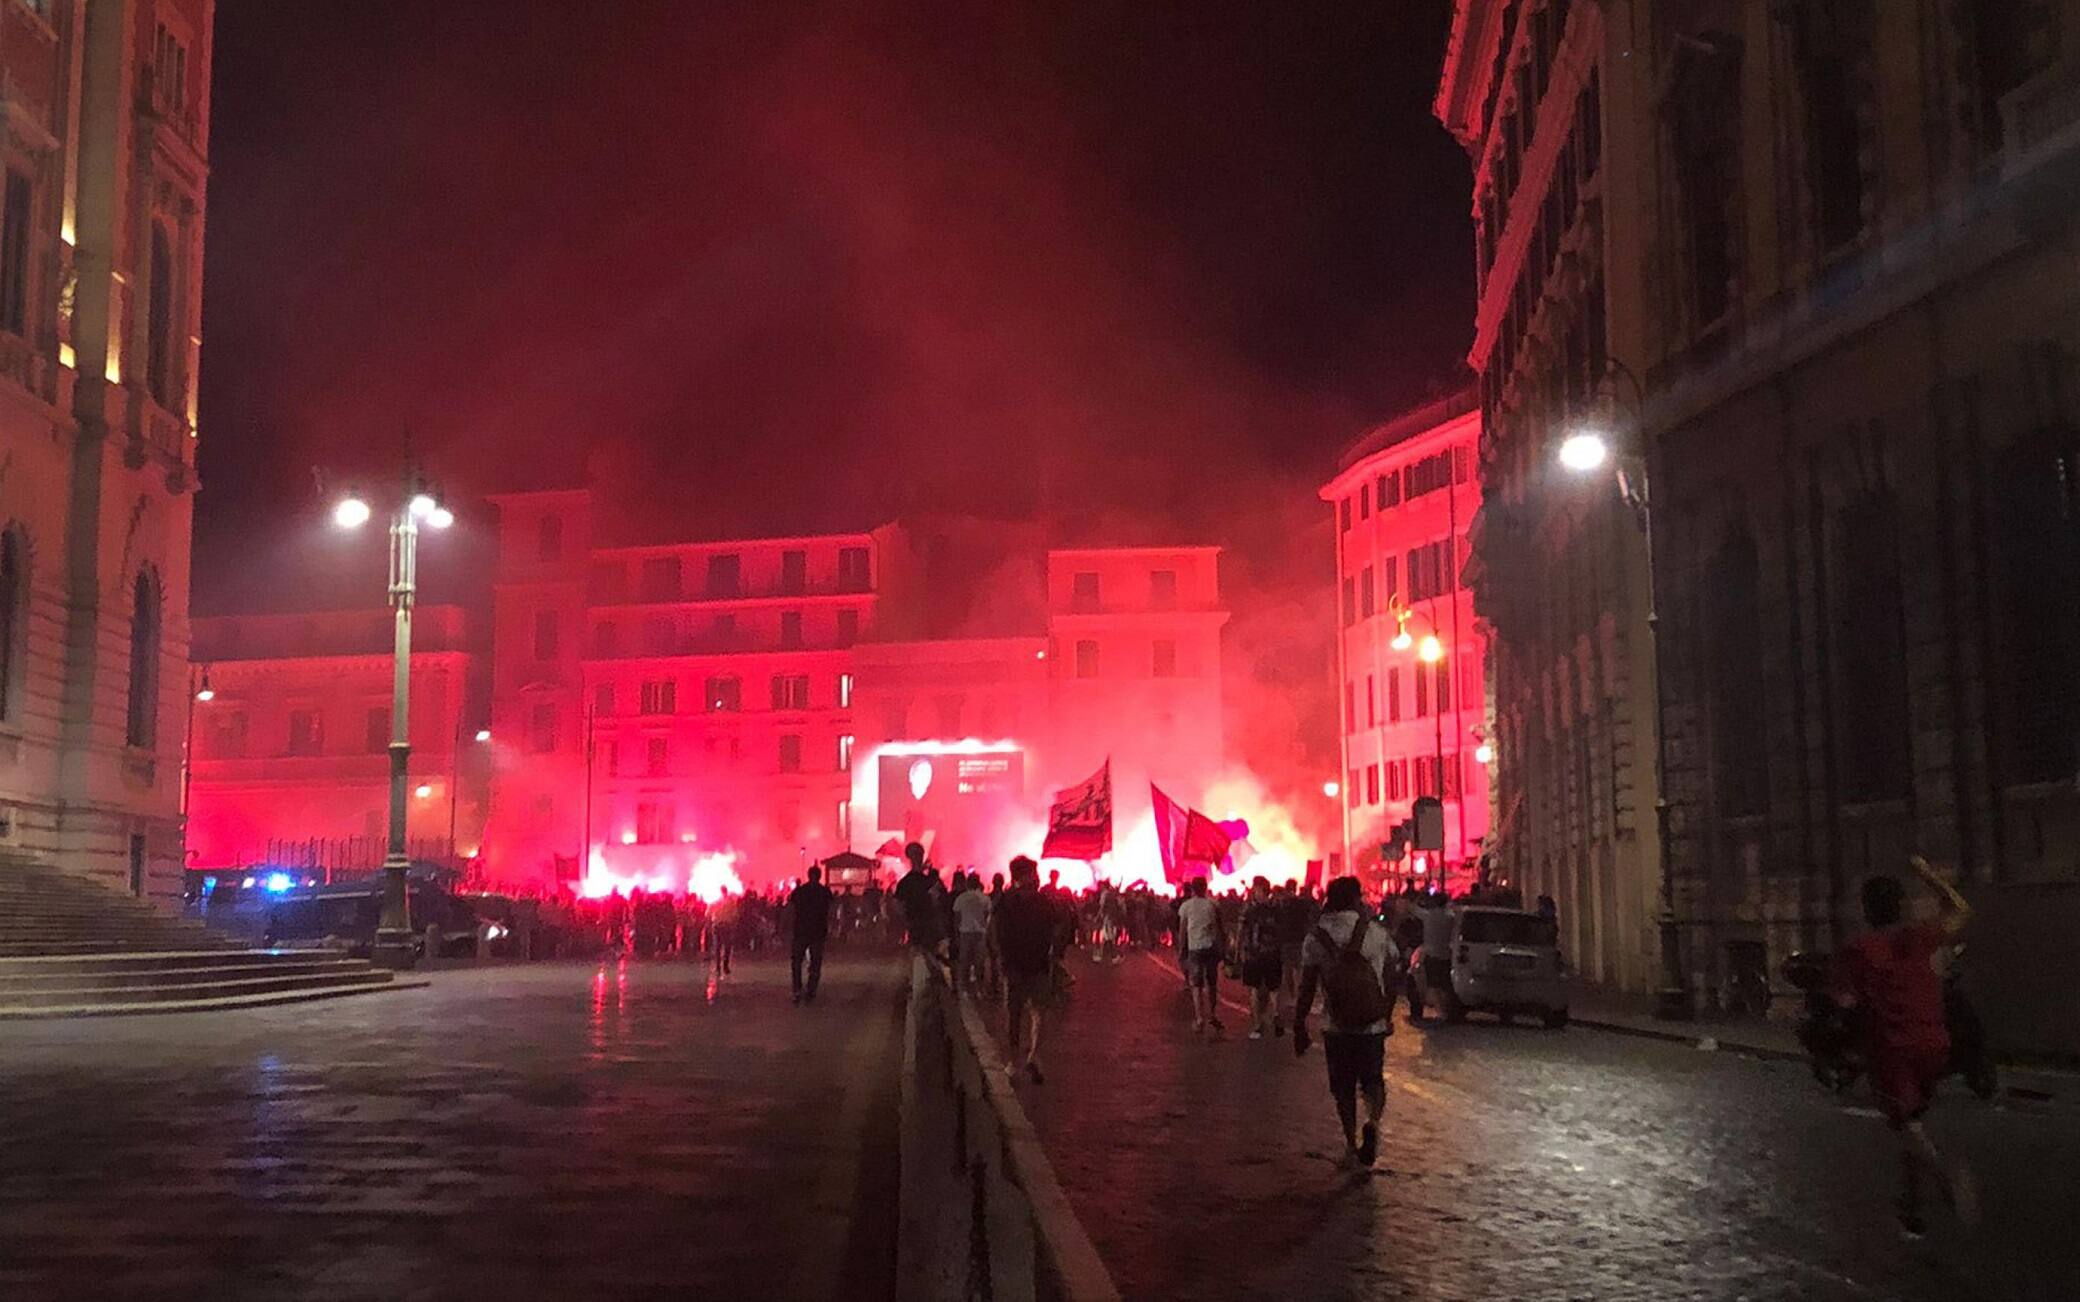 Il  raduno dei tifosi giallorossi tra via del Corso e piazza del Parlamento in centro Roma, 21 luglio 2021.
ANSA/Melania Di Giacomo